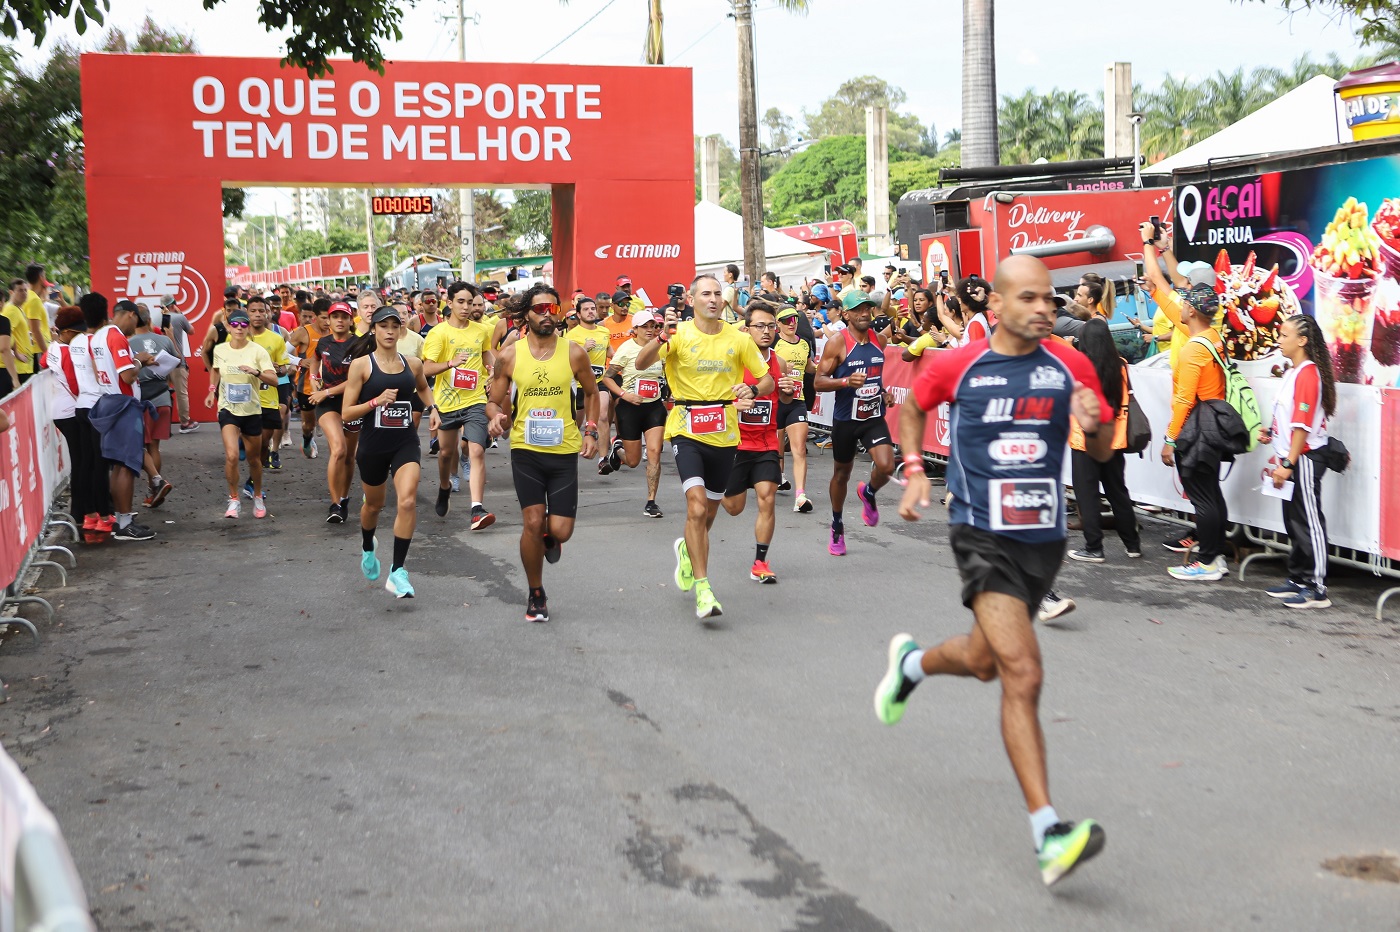 Última etapa da Centauro Reveza adidas reúne 2 mil corredores em Belo Horizonte